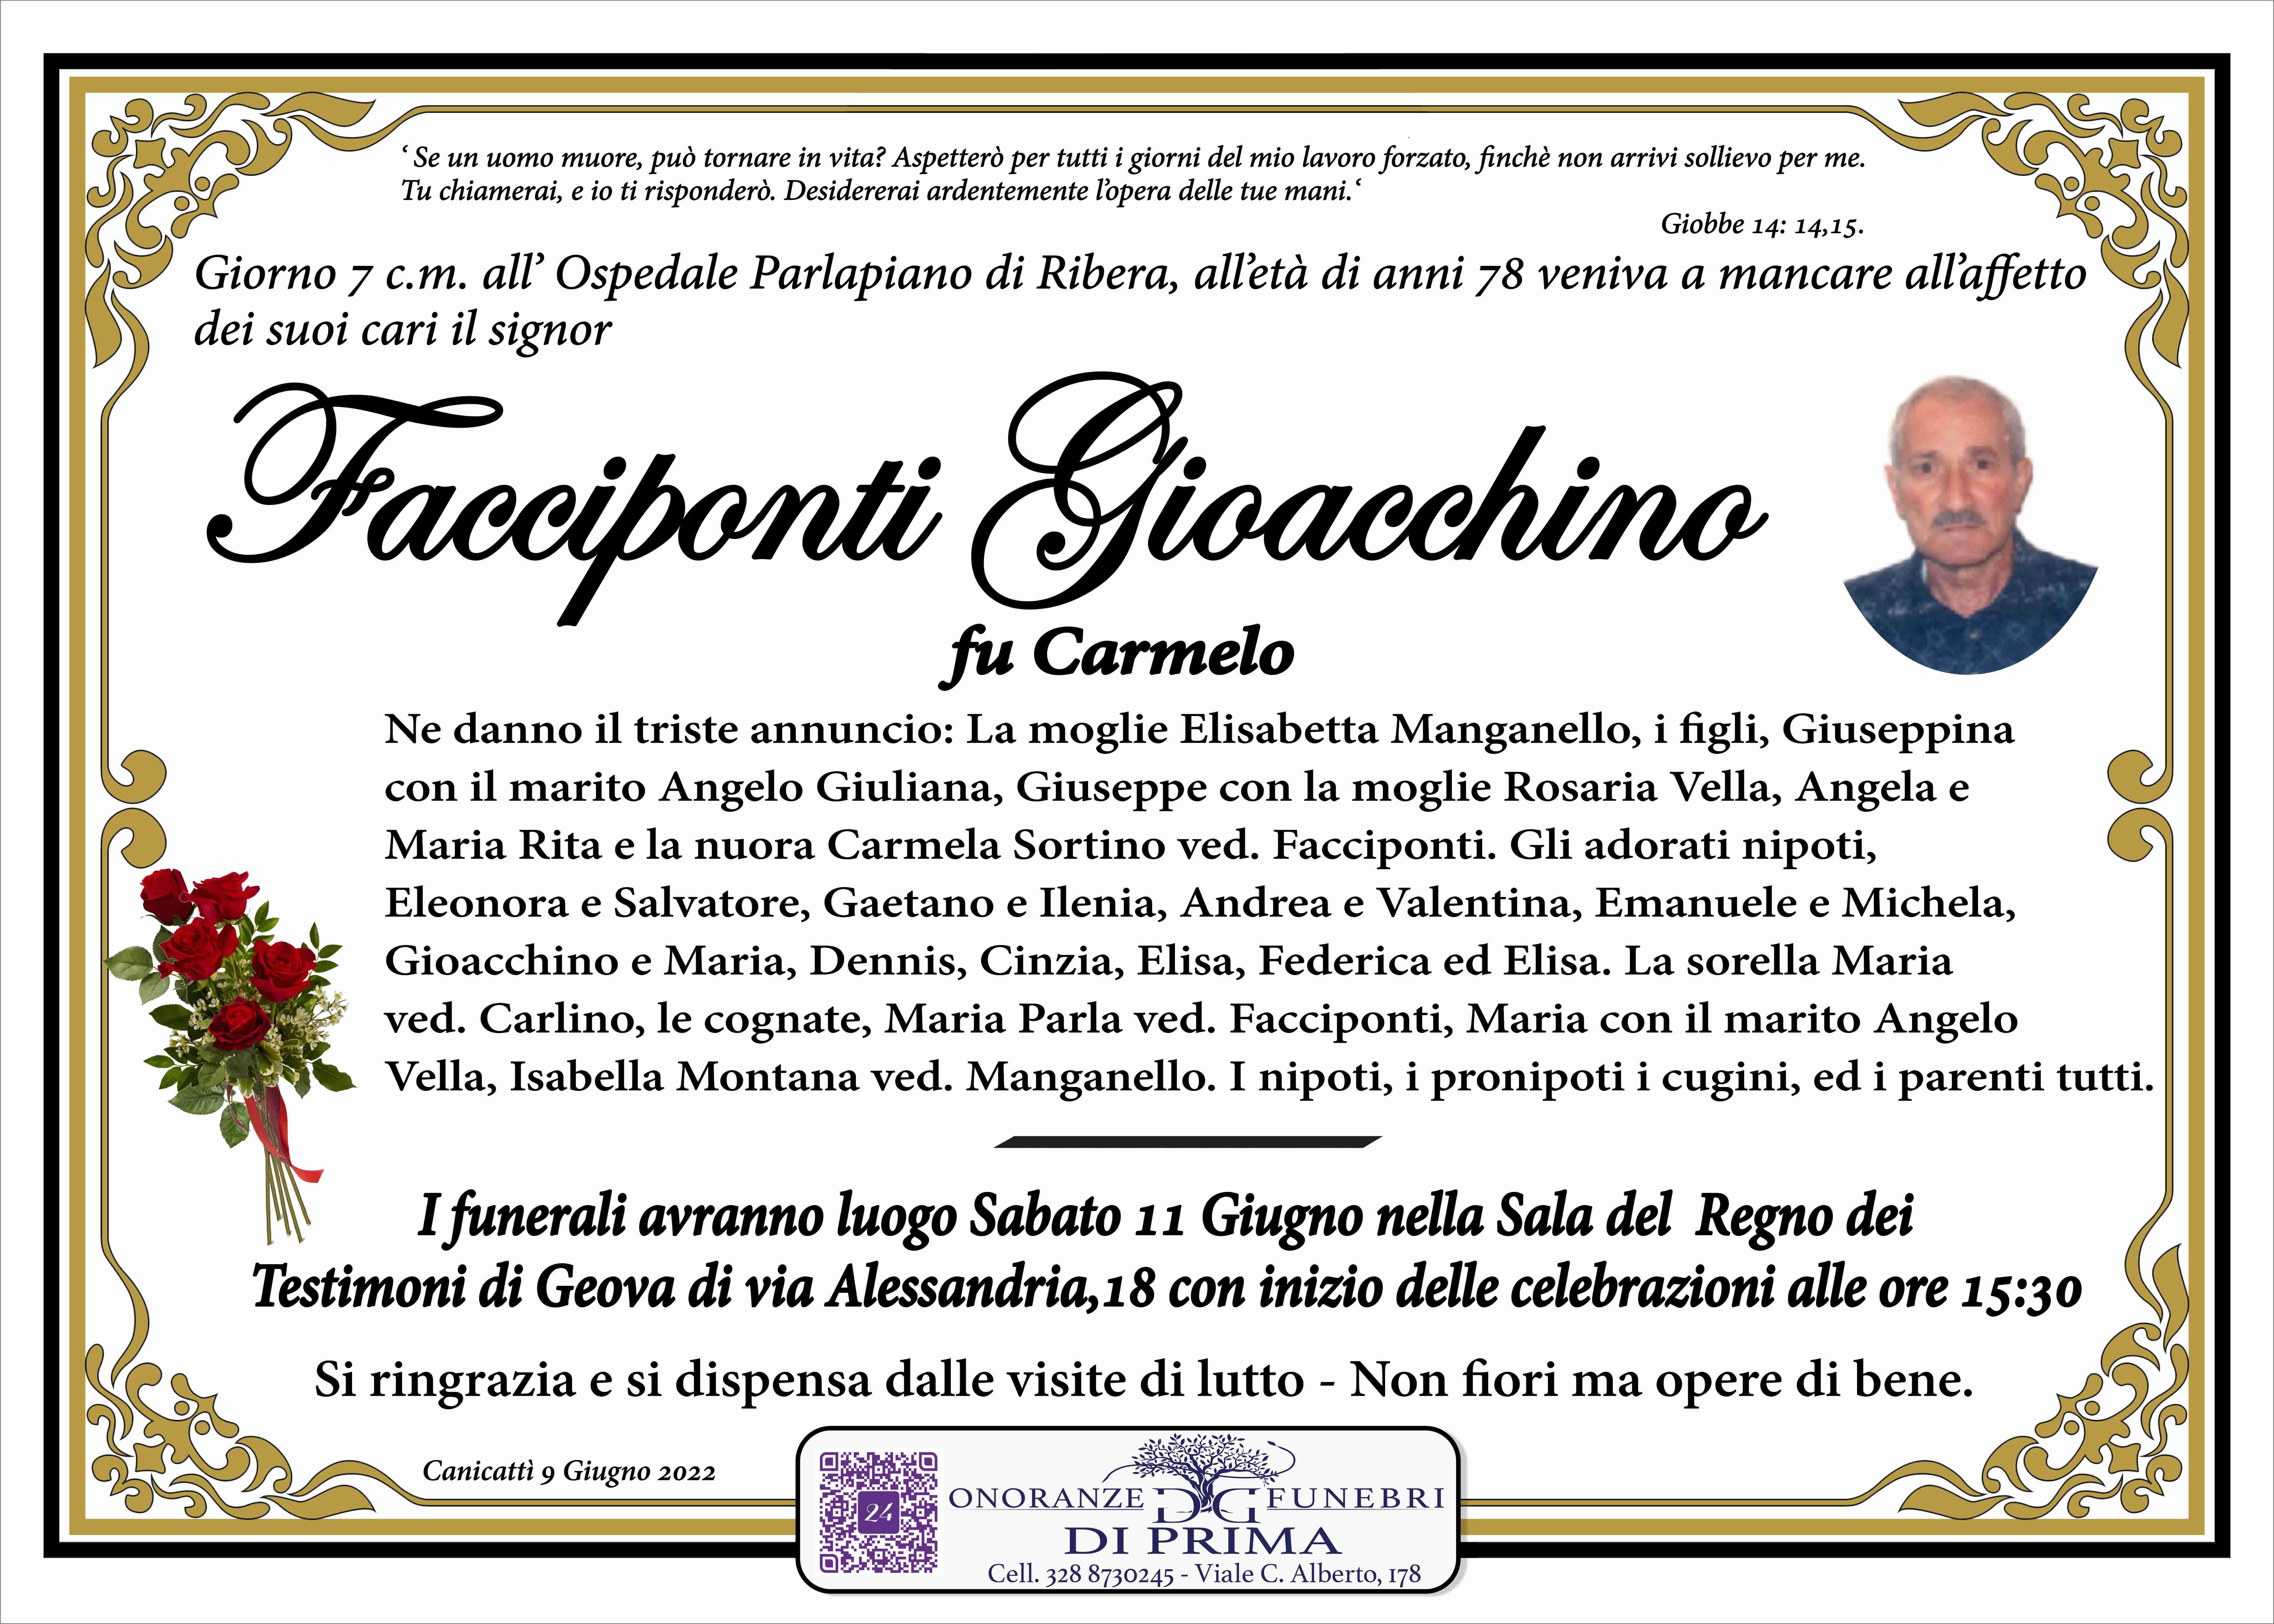 Gioacchino Facciponti